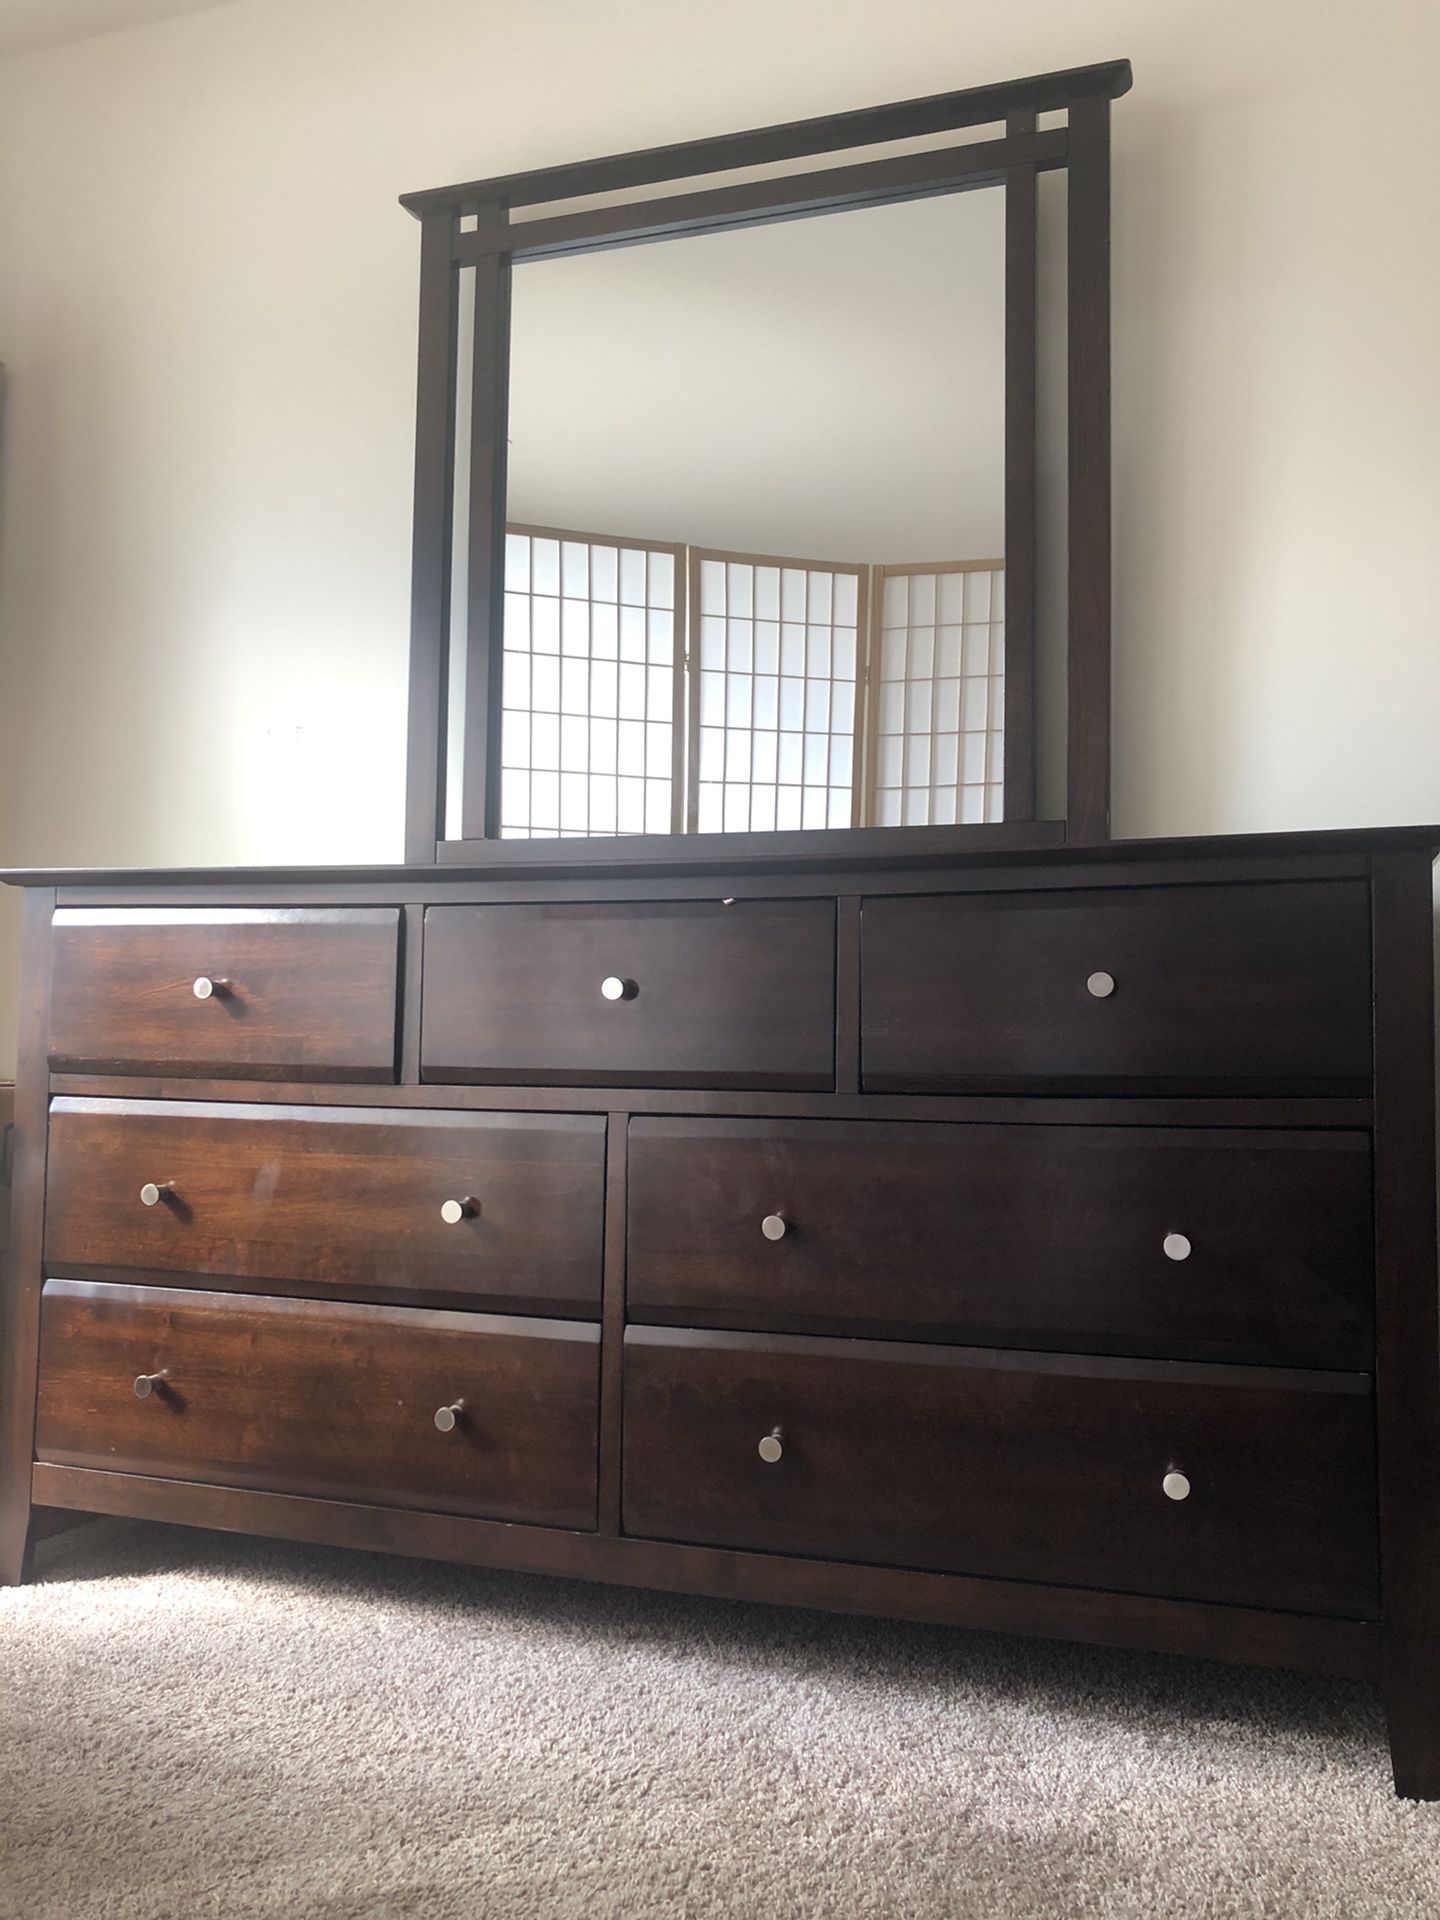 Bedroom Set (Dresser, Queen Bed, Nightstand) Must Sell ASAP